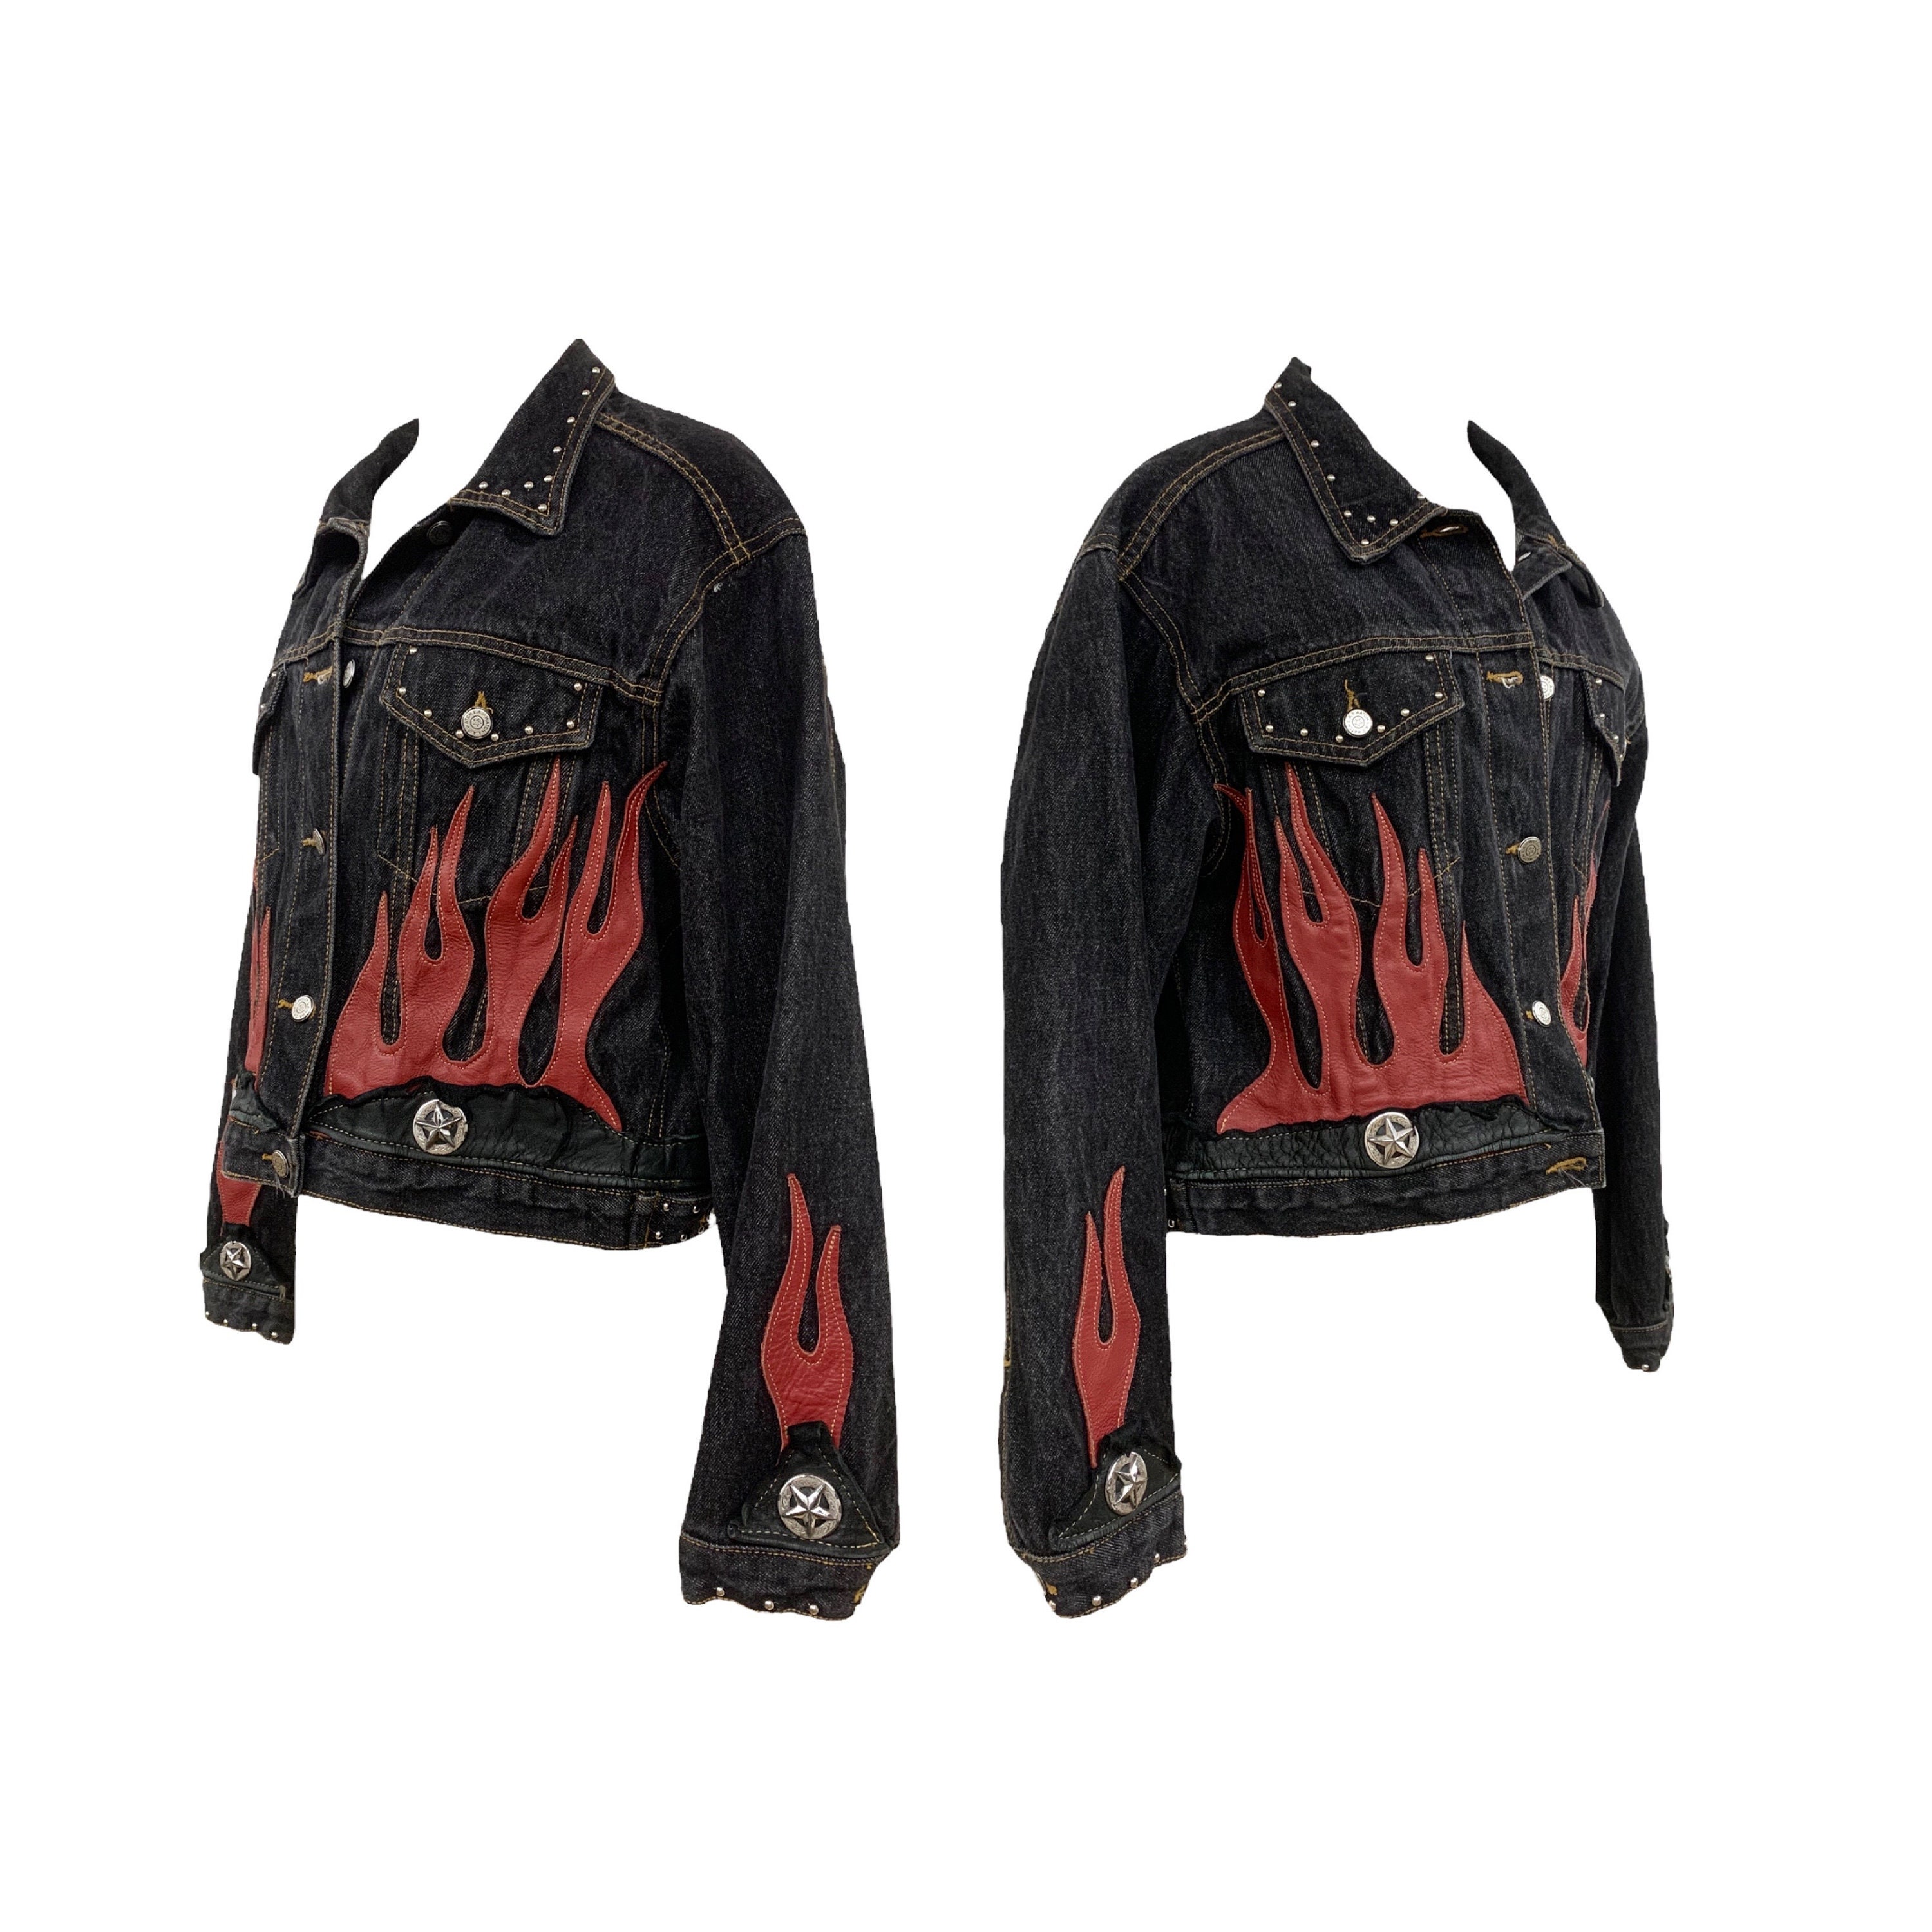 Maker of Jacket Biker Jackets Vintage 90 Black Flame Leather